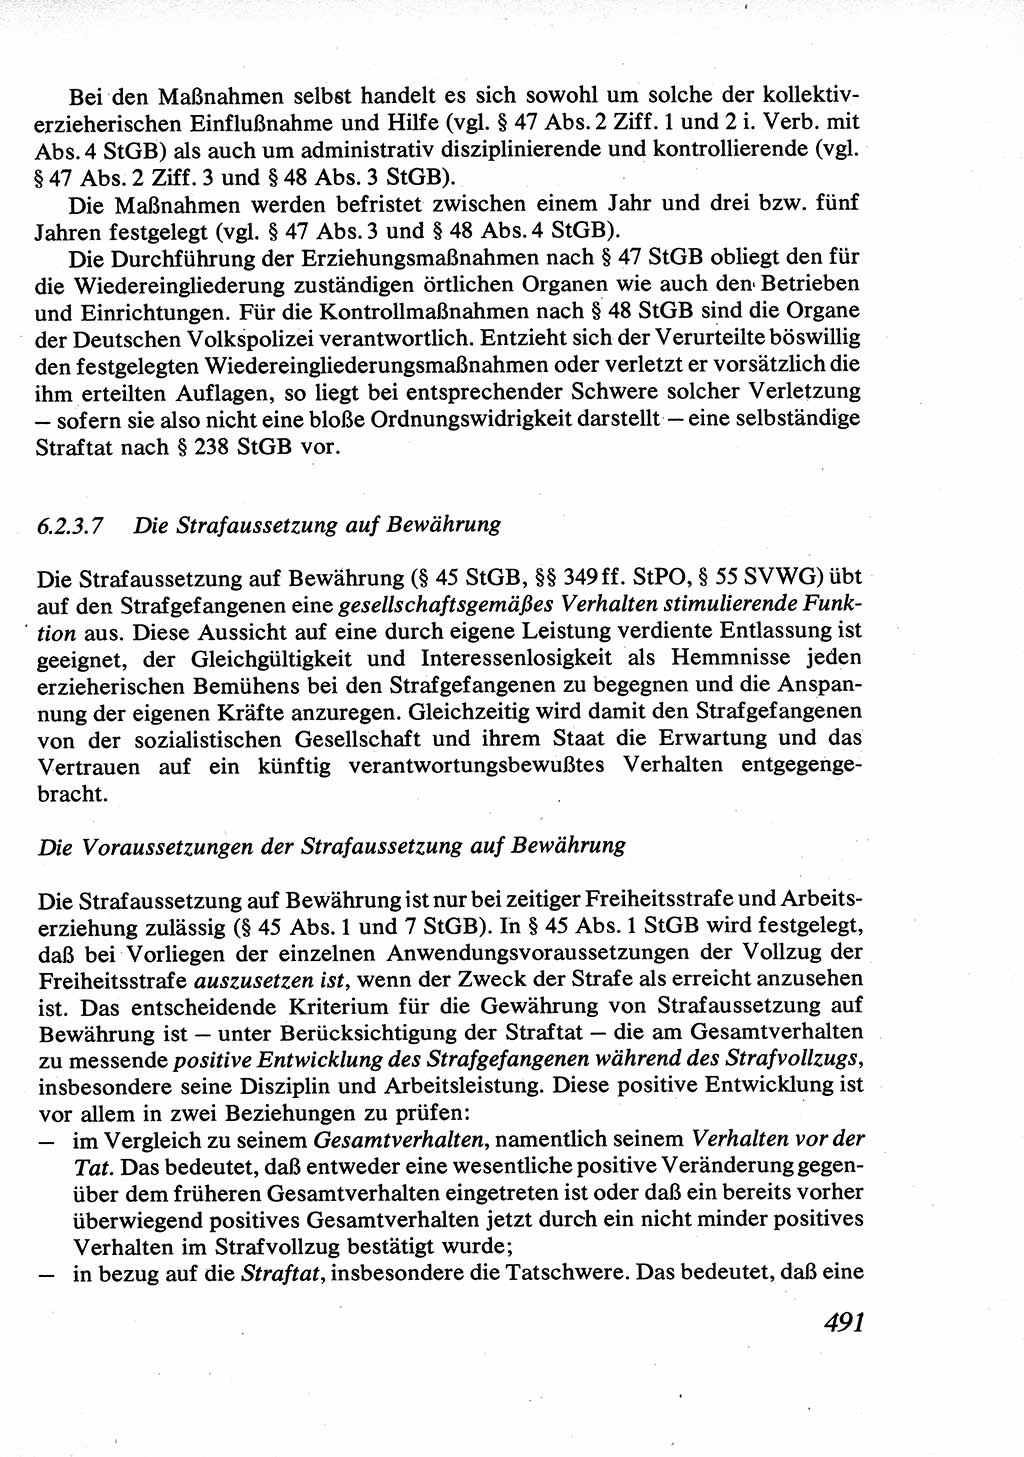 Strafrecht [Deutsche Demokratische Republik (DDR)], Allgemeiner Teil, Lehrbuch 1976, Seite 491 (Strafr. DDR AT Lb. 1976, S. 491)